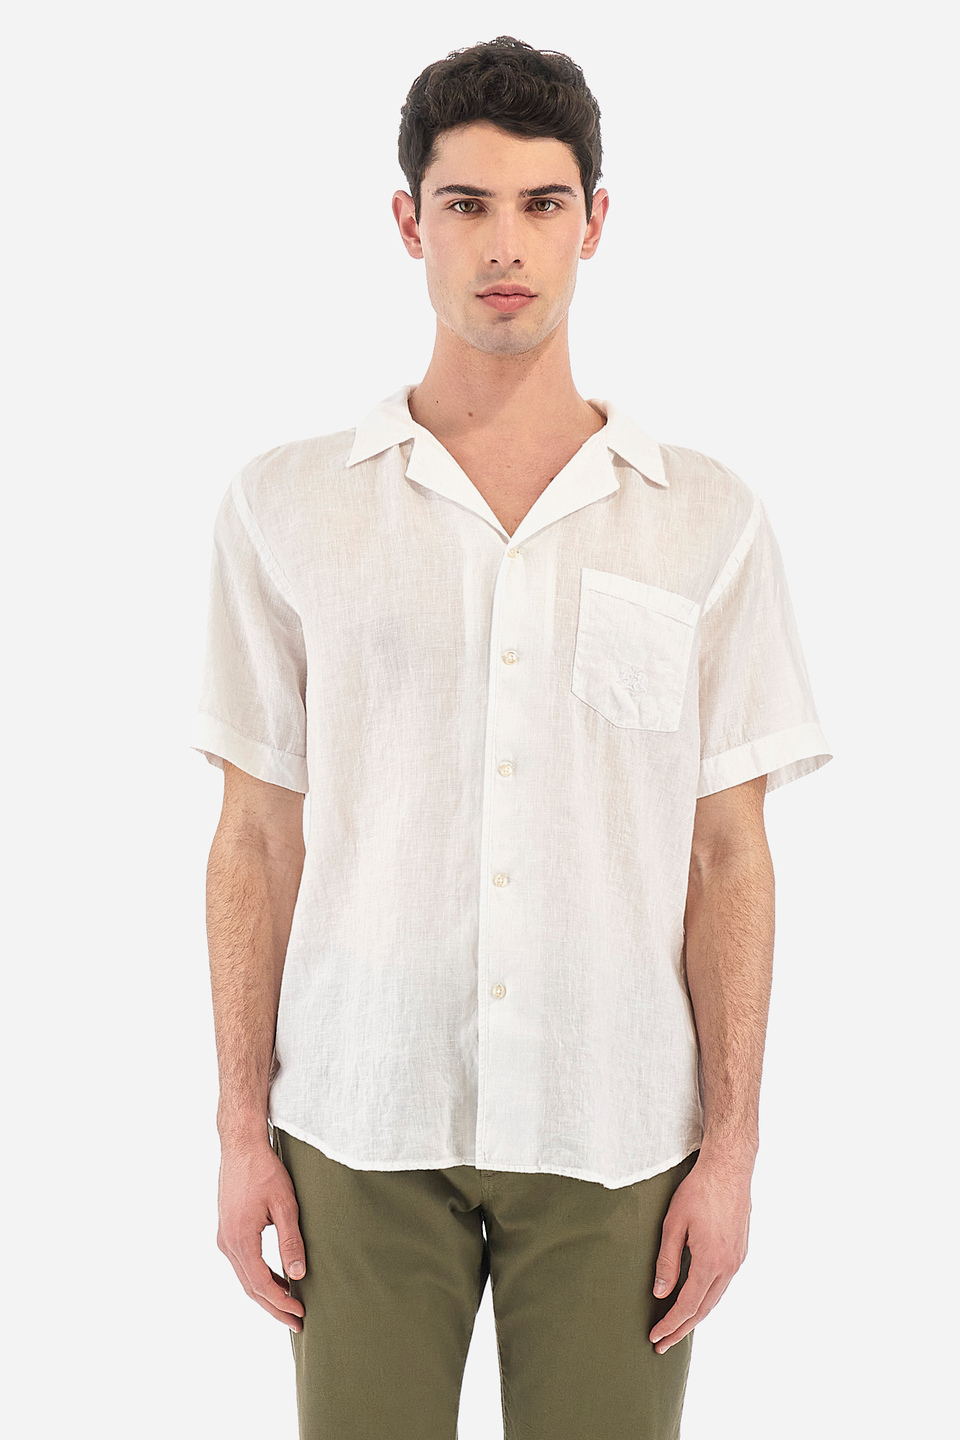 Regular fit 100% linen short-sleeved men's shirt - Varoun Optic White ...